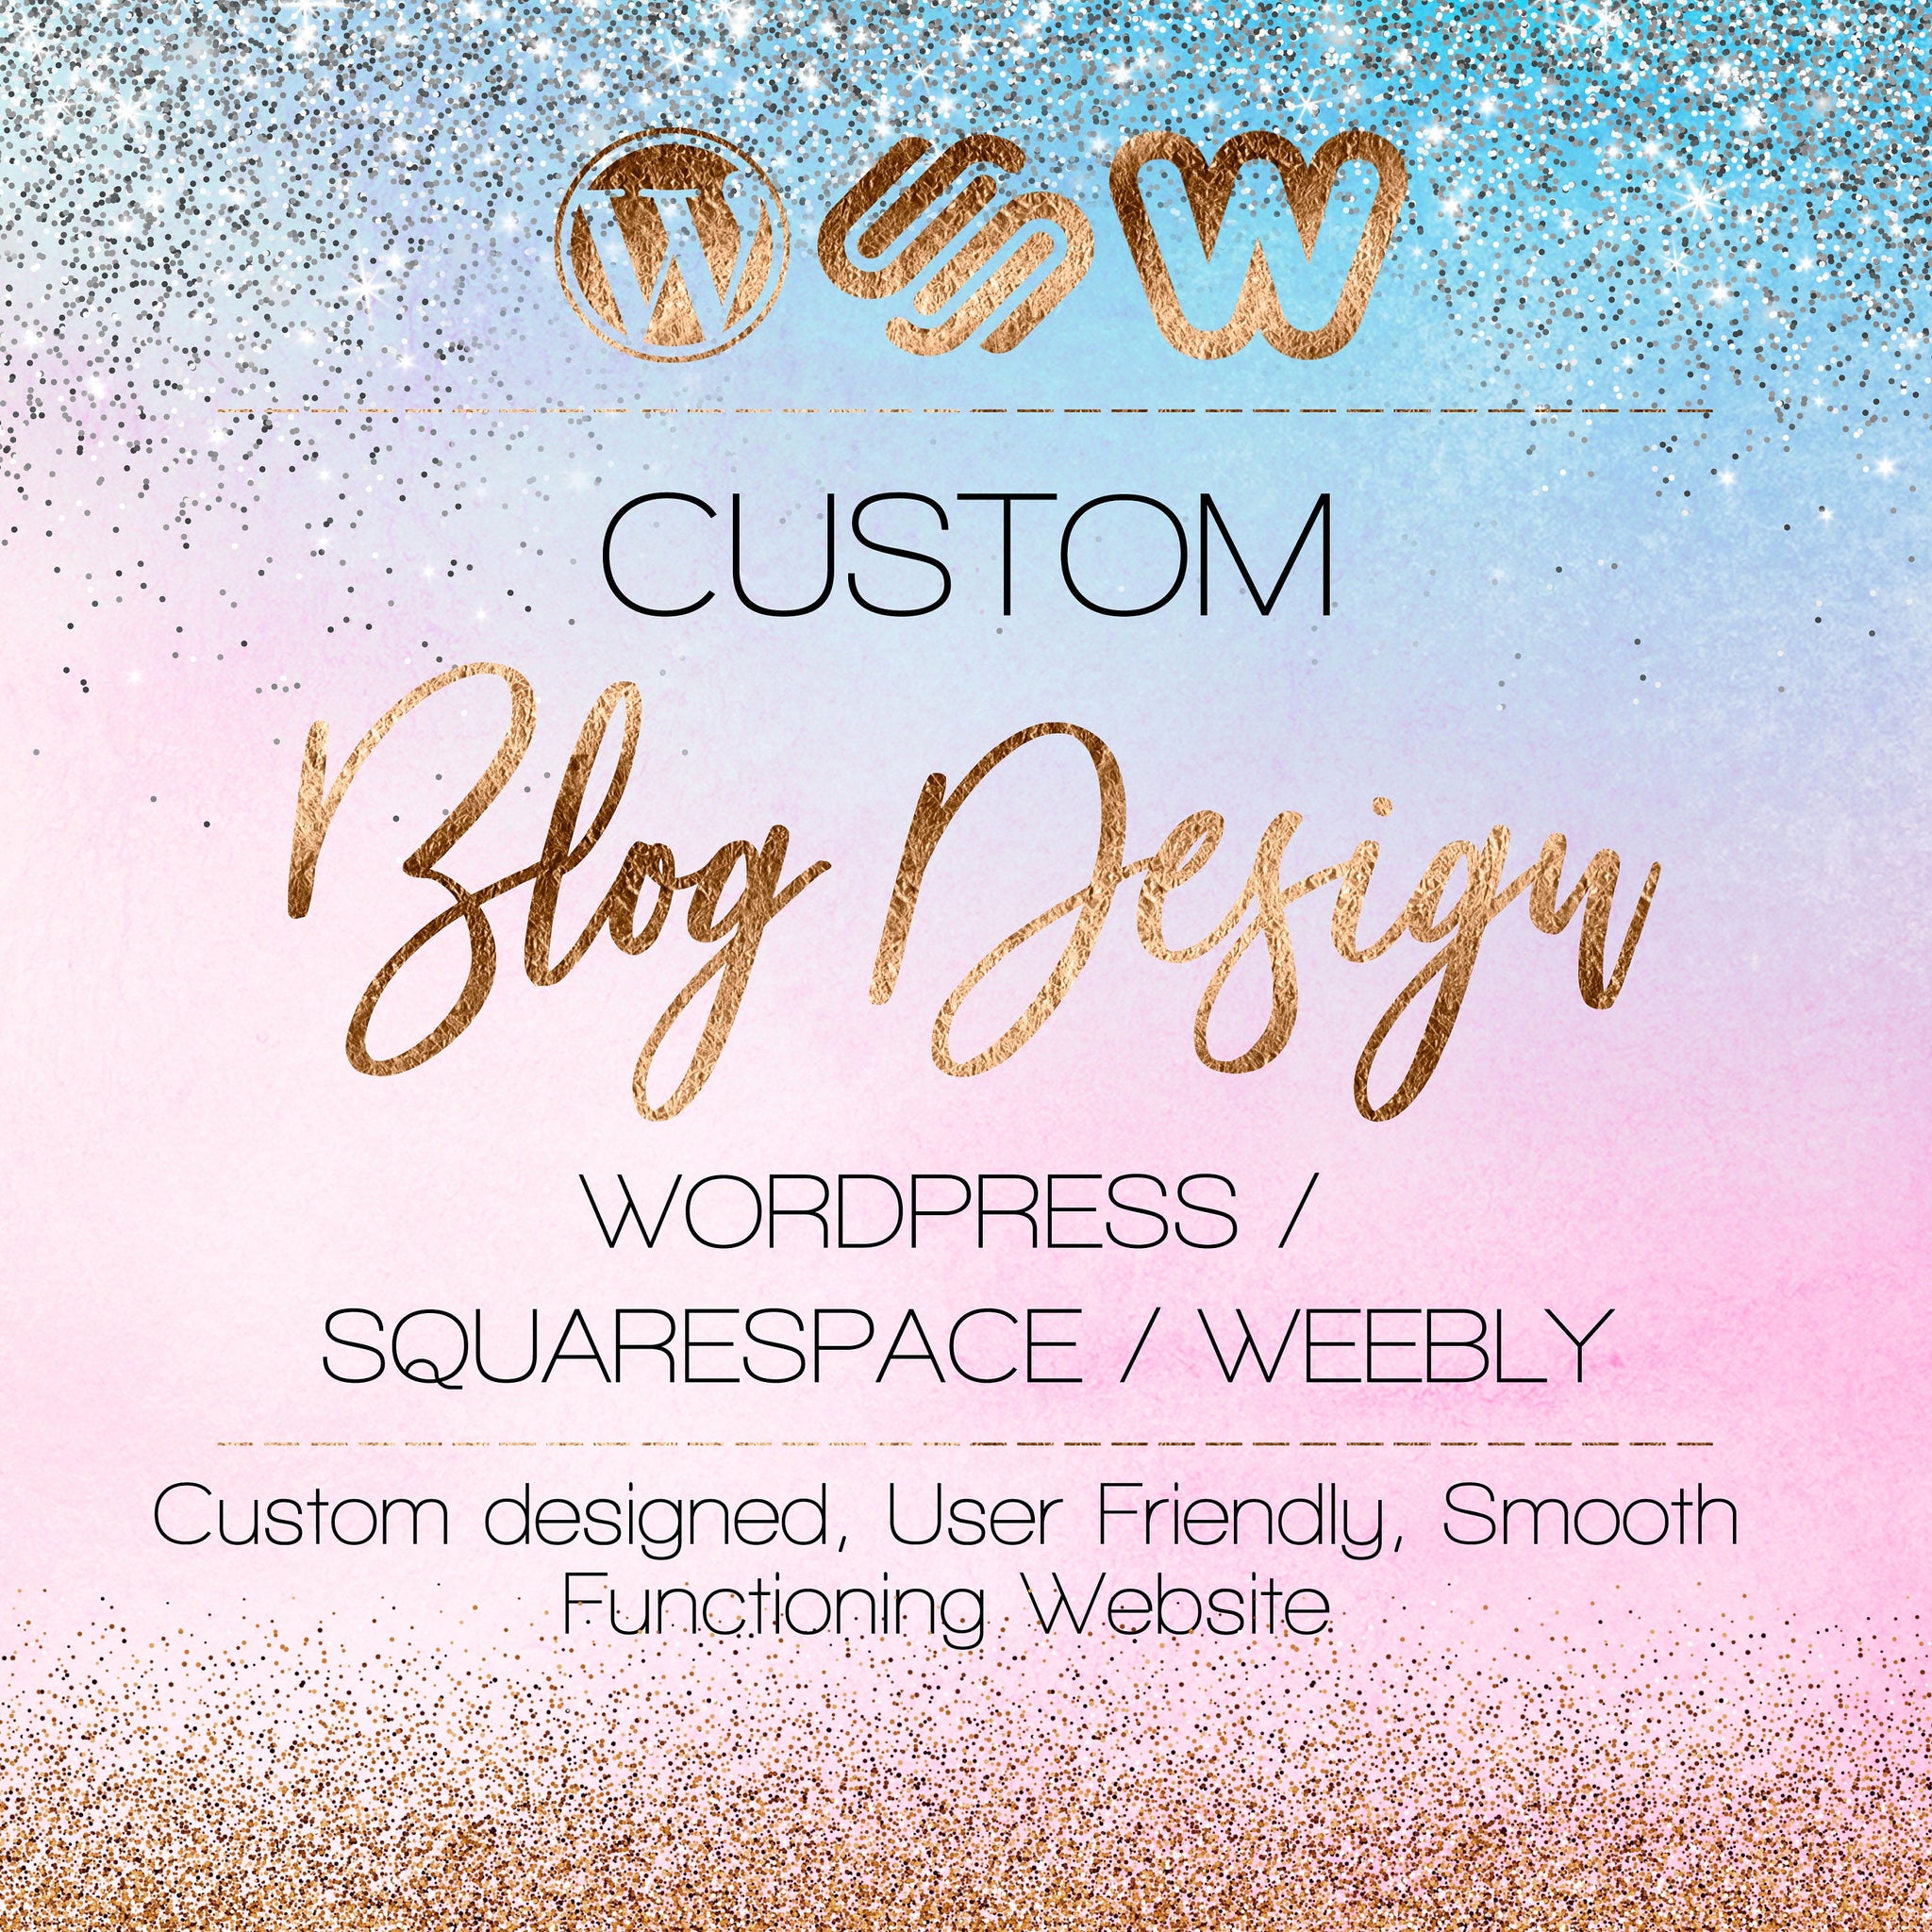 Custom Blog Website Design – Custom Blog Design - WordPress - SquareSpace - Square/Weebly - Events Website - Portfolio - Photography